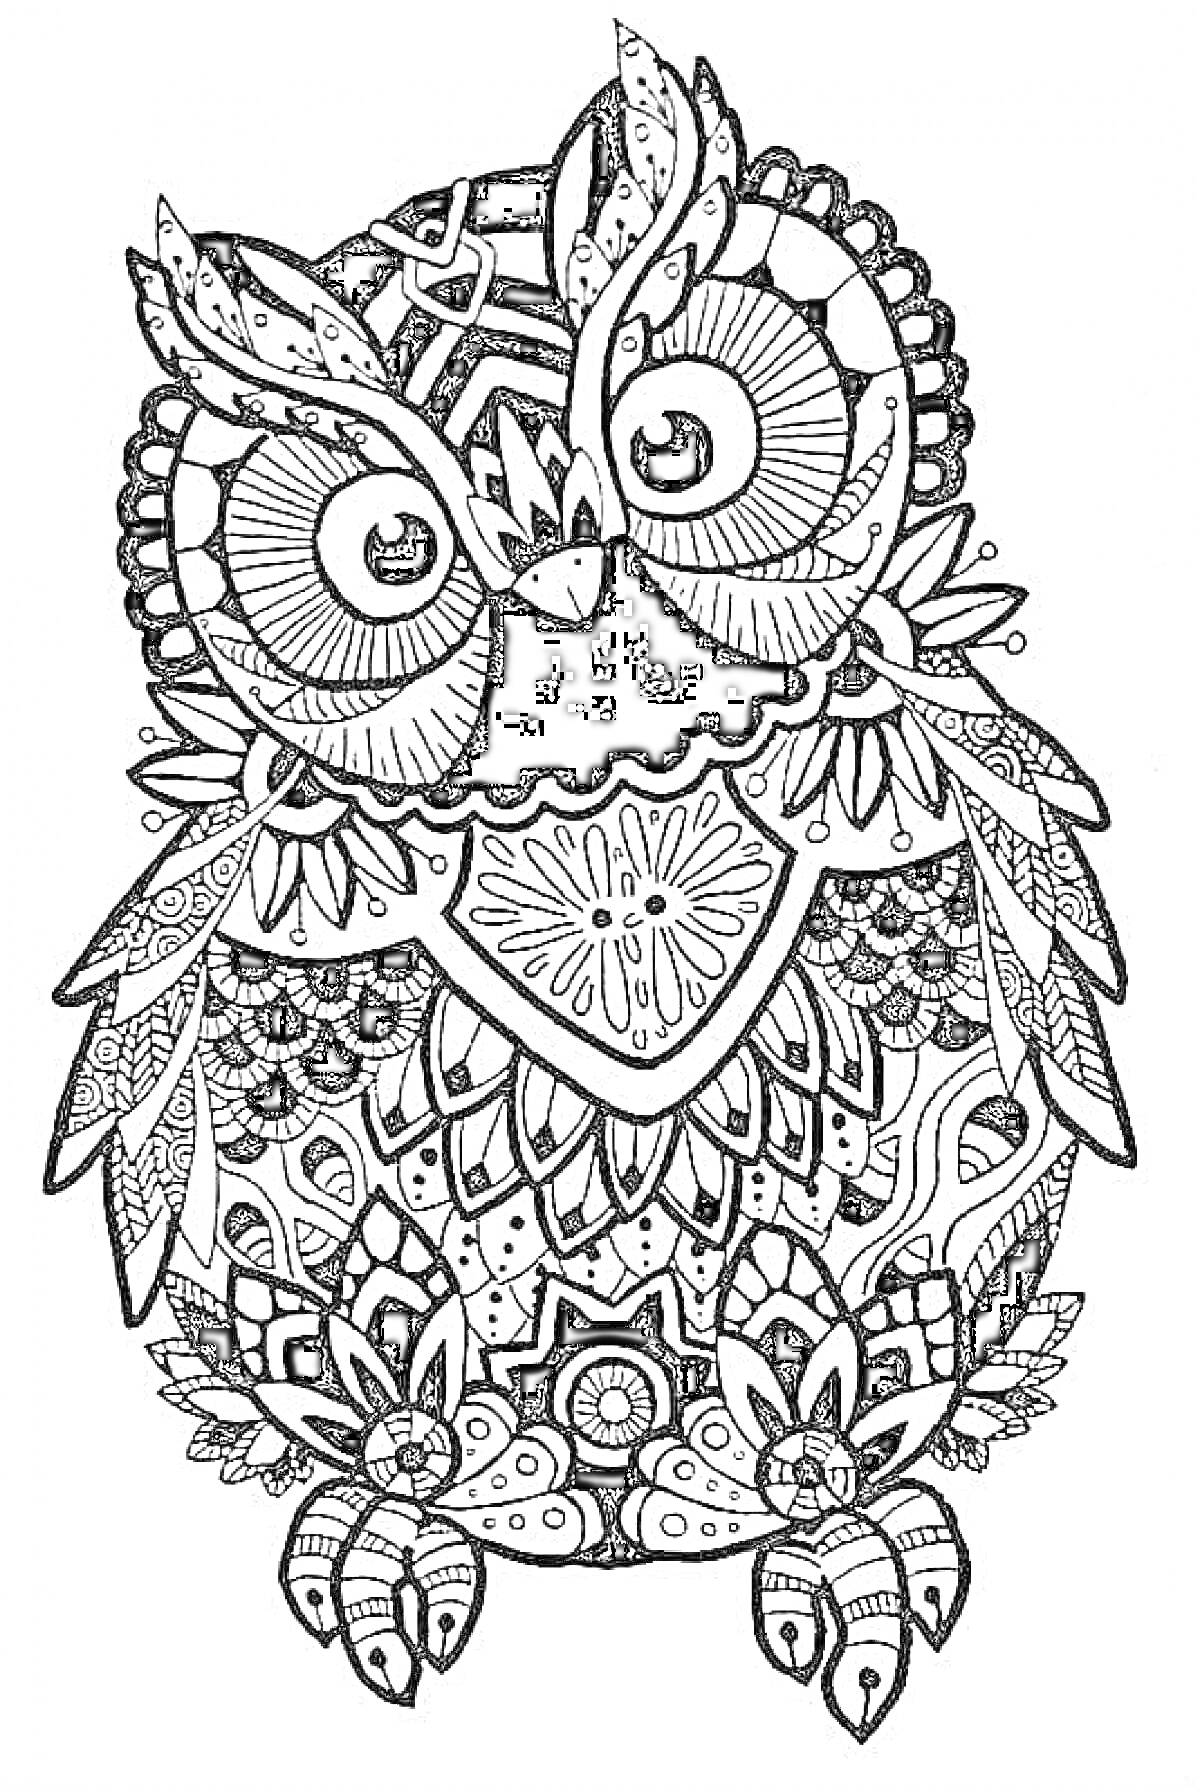 Раскраска Антистрессовая раскраска совы в узорах с цветочными и геометрическими элементами